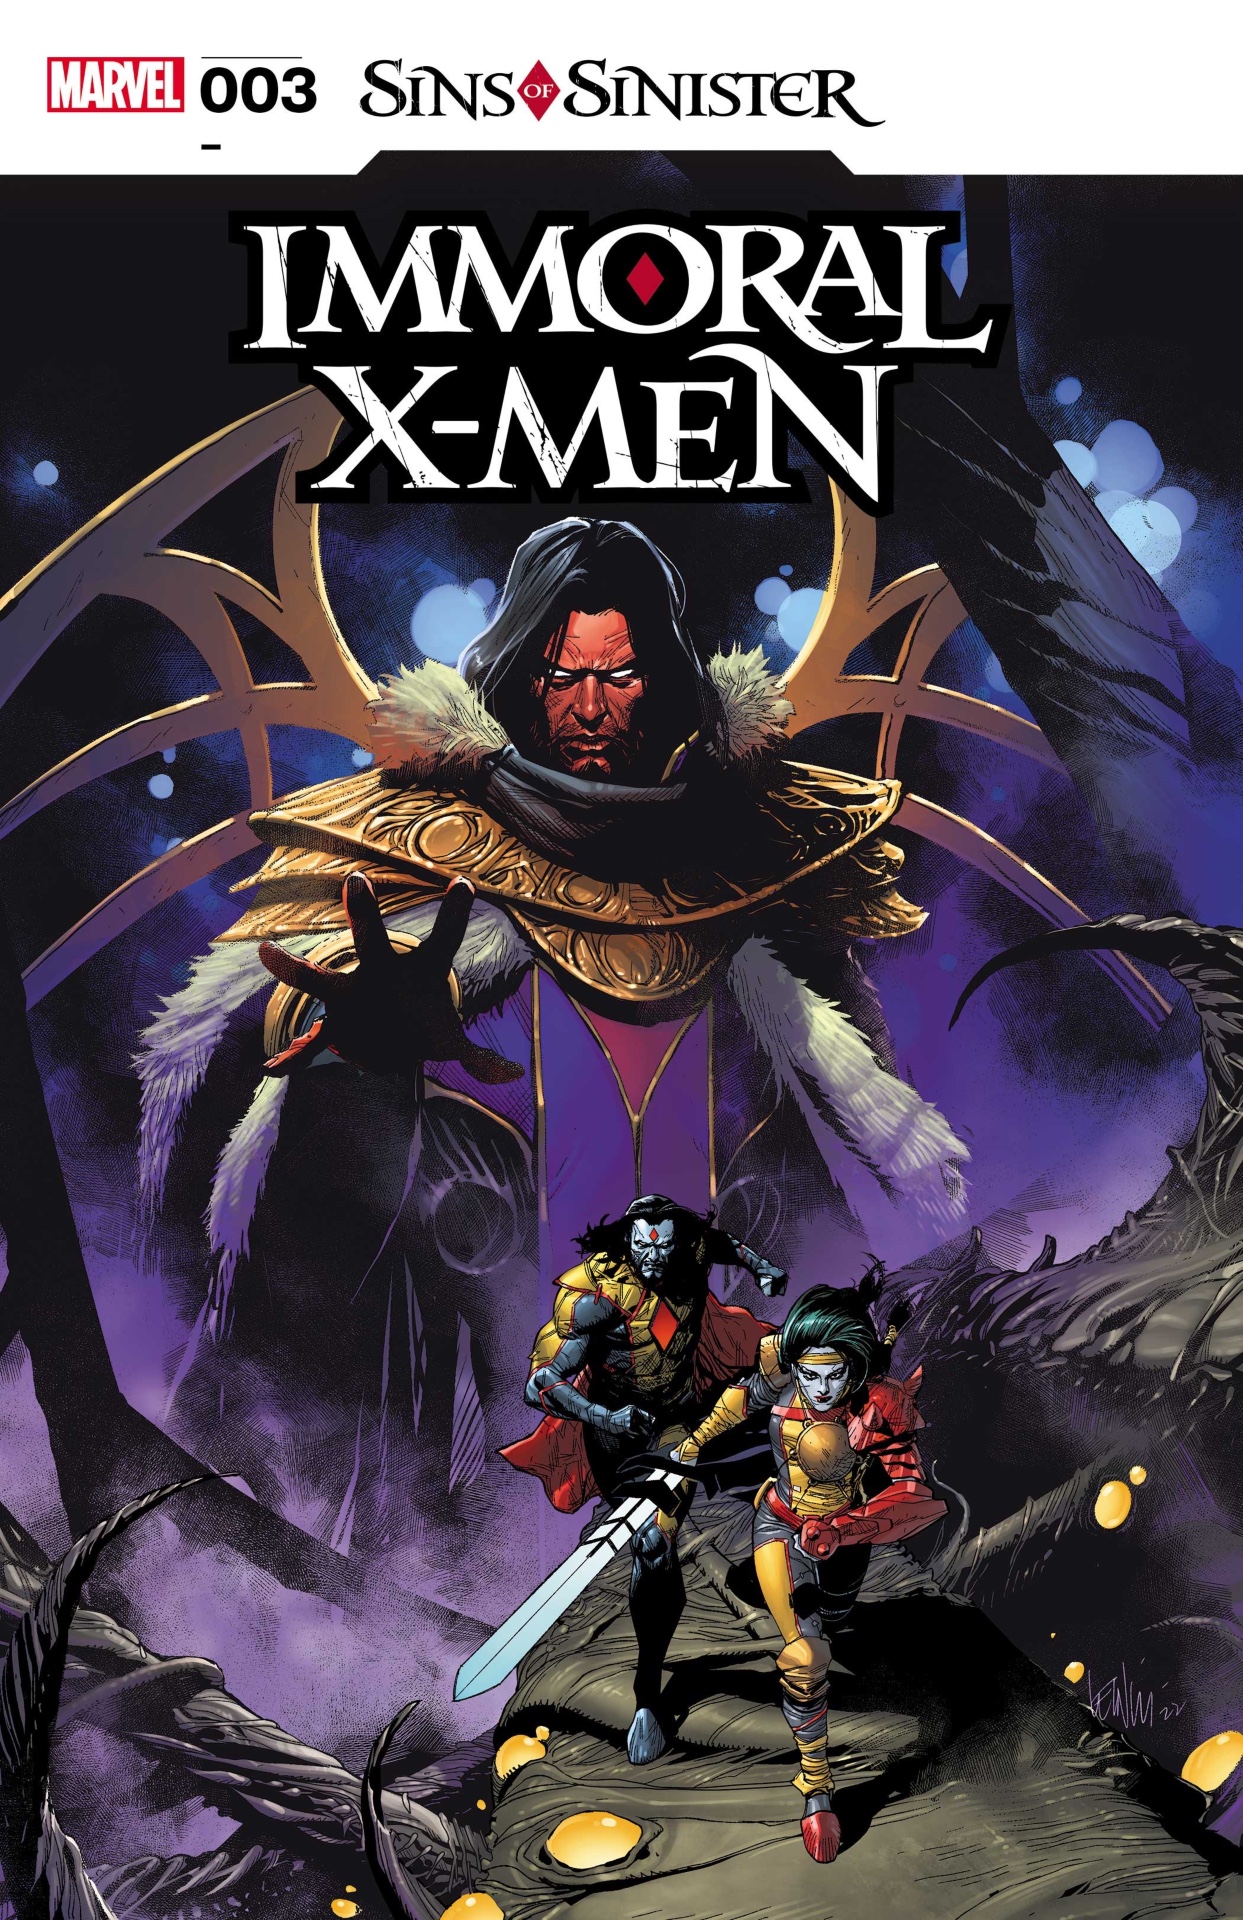 Immoral X-Men #3 cover art